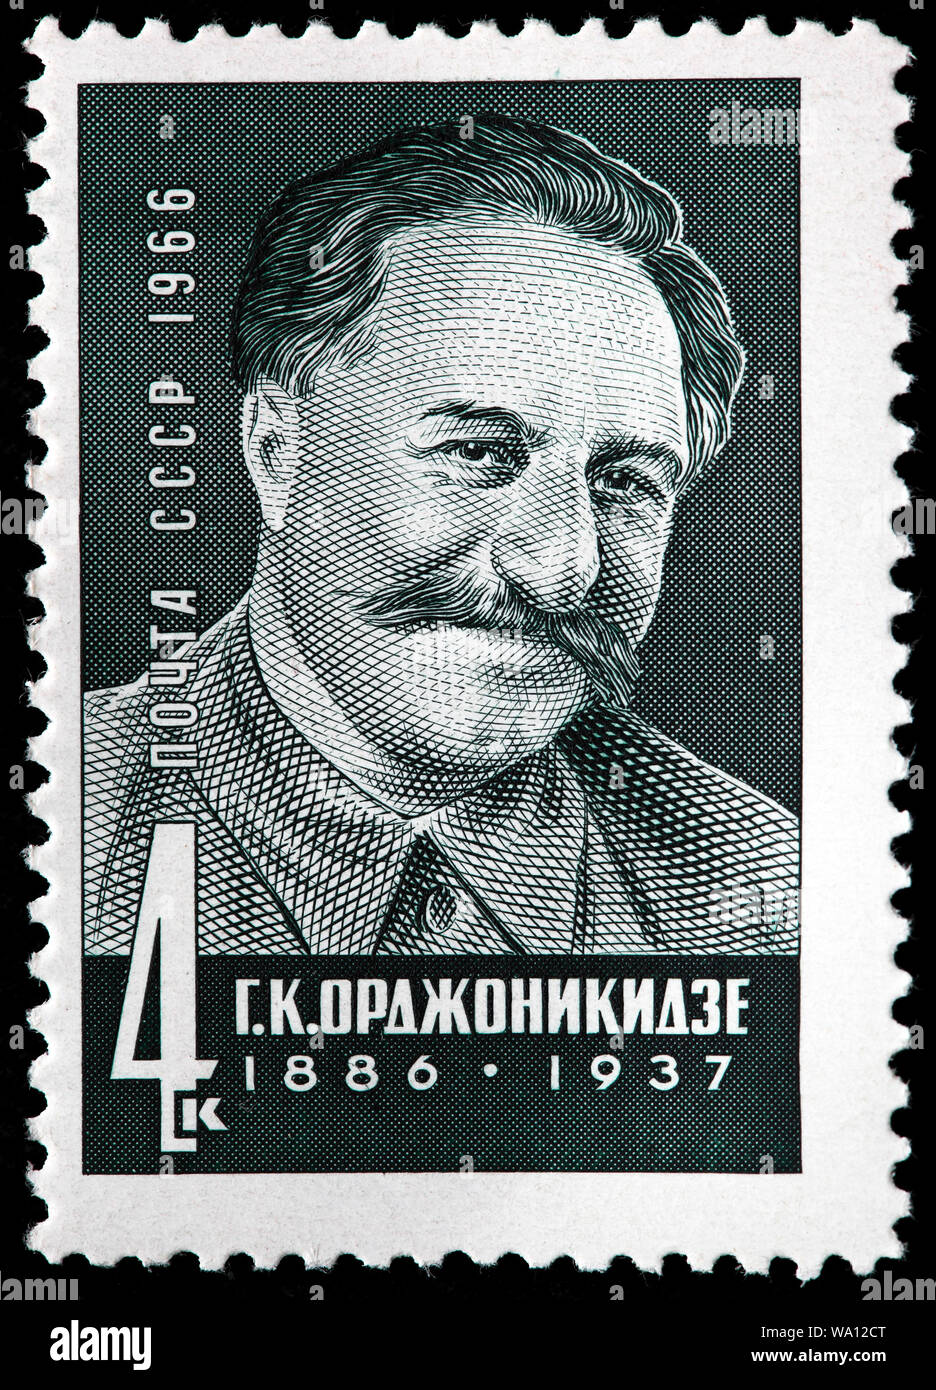 Grigoriy Ordzhonikidze, Sergo Ordzhonikidze (1886-1937), Bolchevik géorgien, leader politique soviétique, timbre-poste, Russie, URSS, 1966 Banque D'Images